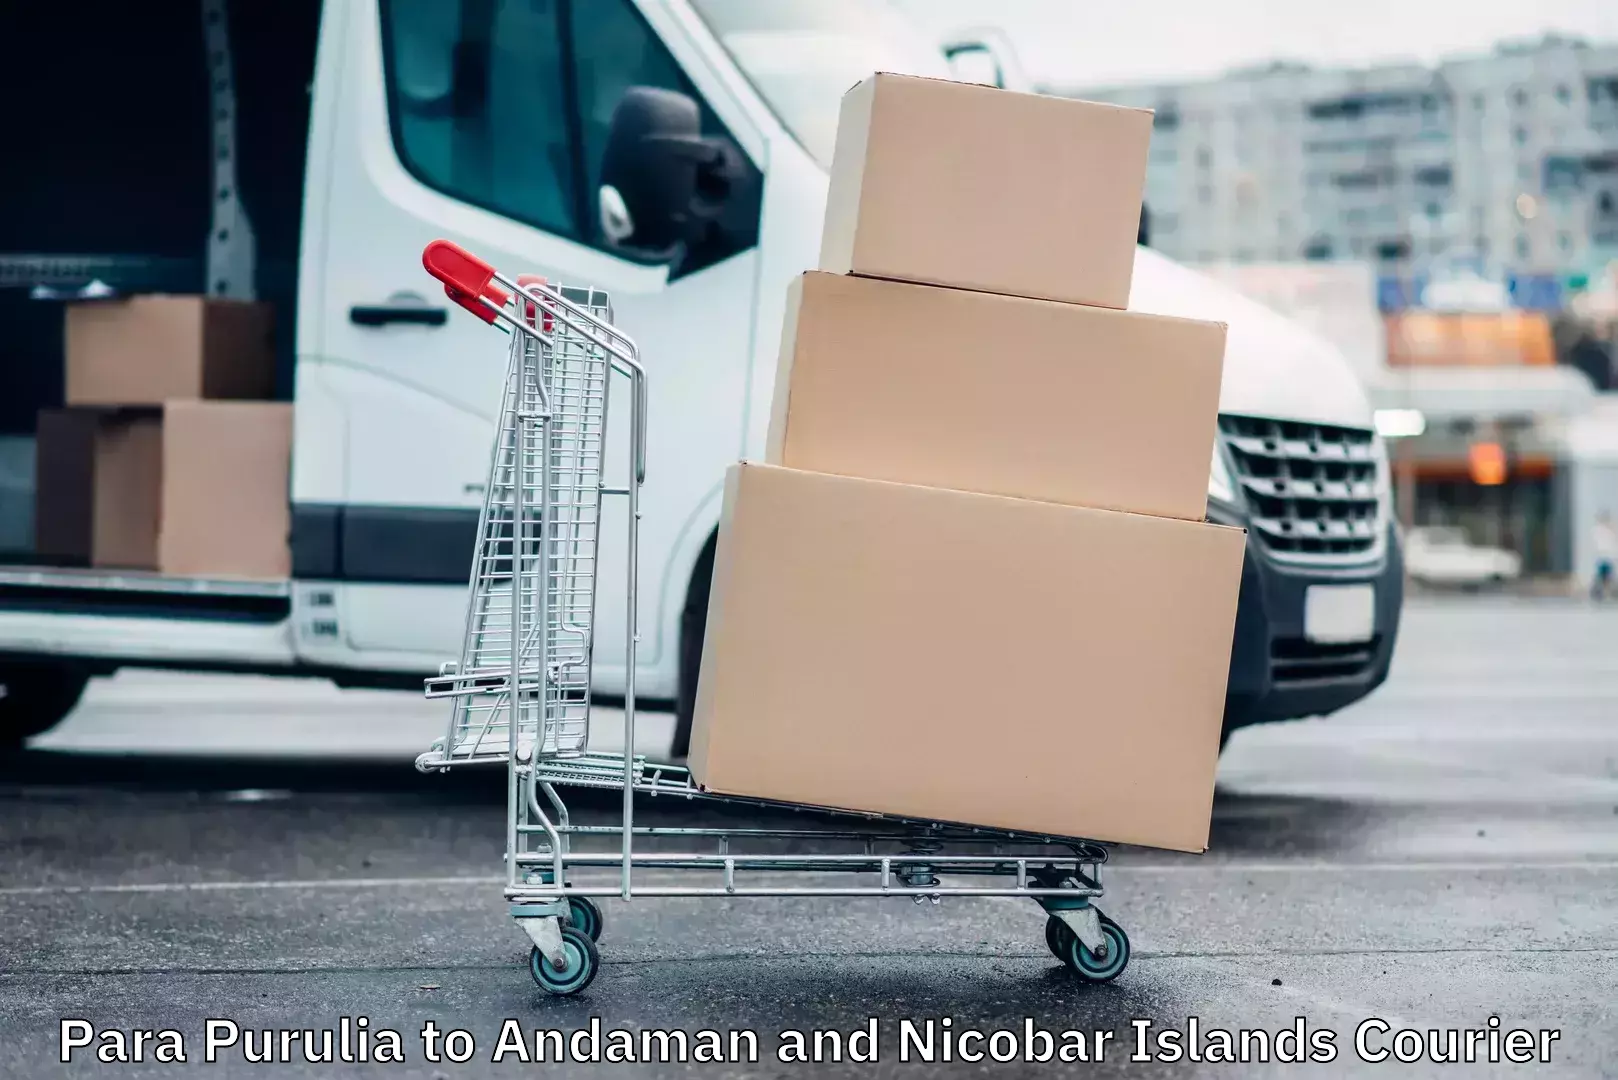 Cargo delivery service Para Purulia to Andaman and Nicobar Islands